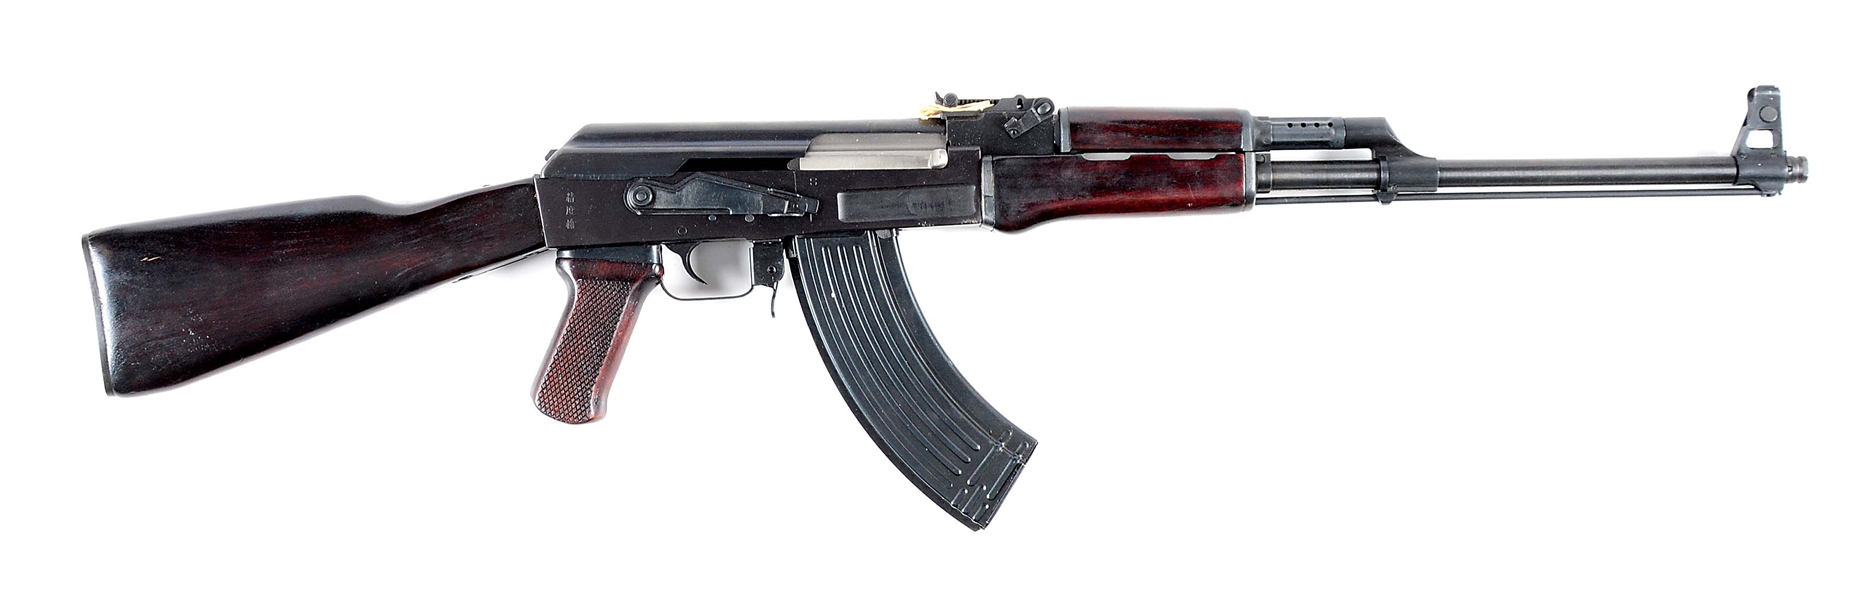 (M) CHINESE POLYTECH LEGEND SERIES AK-47S NATIONAL MATCH SEMI AUTOMATIC RIFLE.